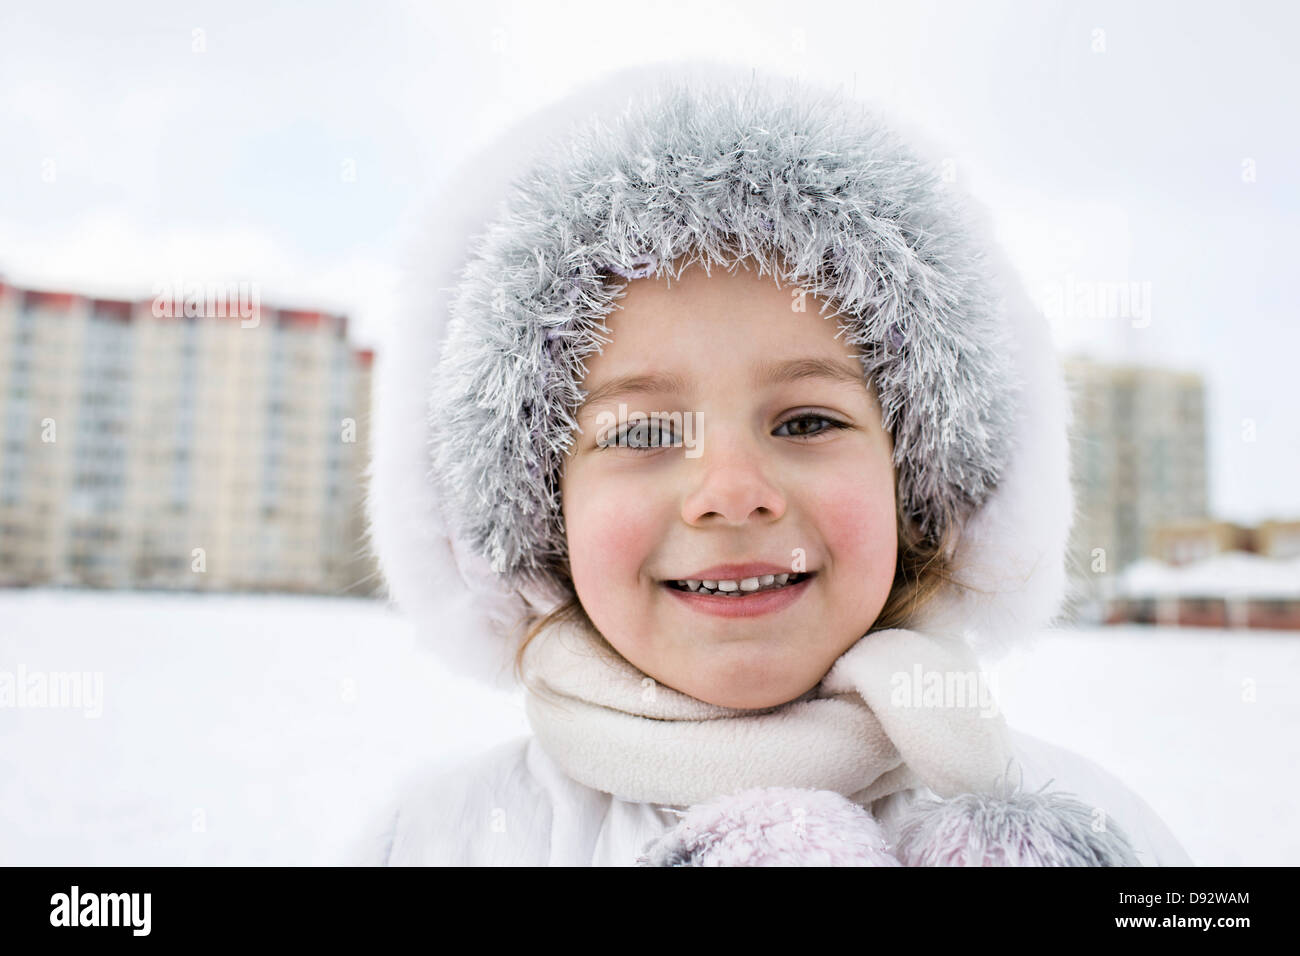 Une jeune fille portant des vêtements chauds à l'extérieur en hiver Banque D'Images